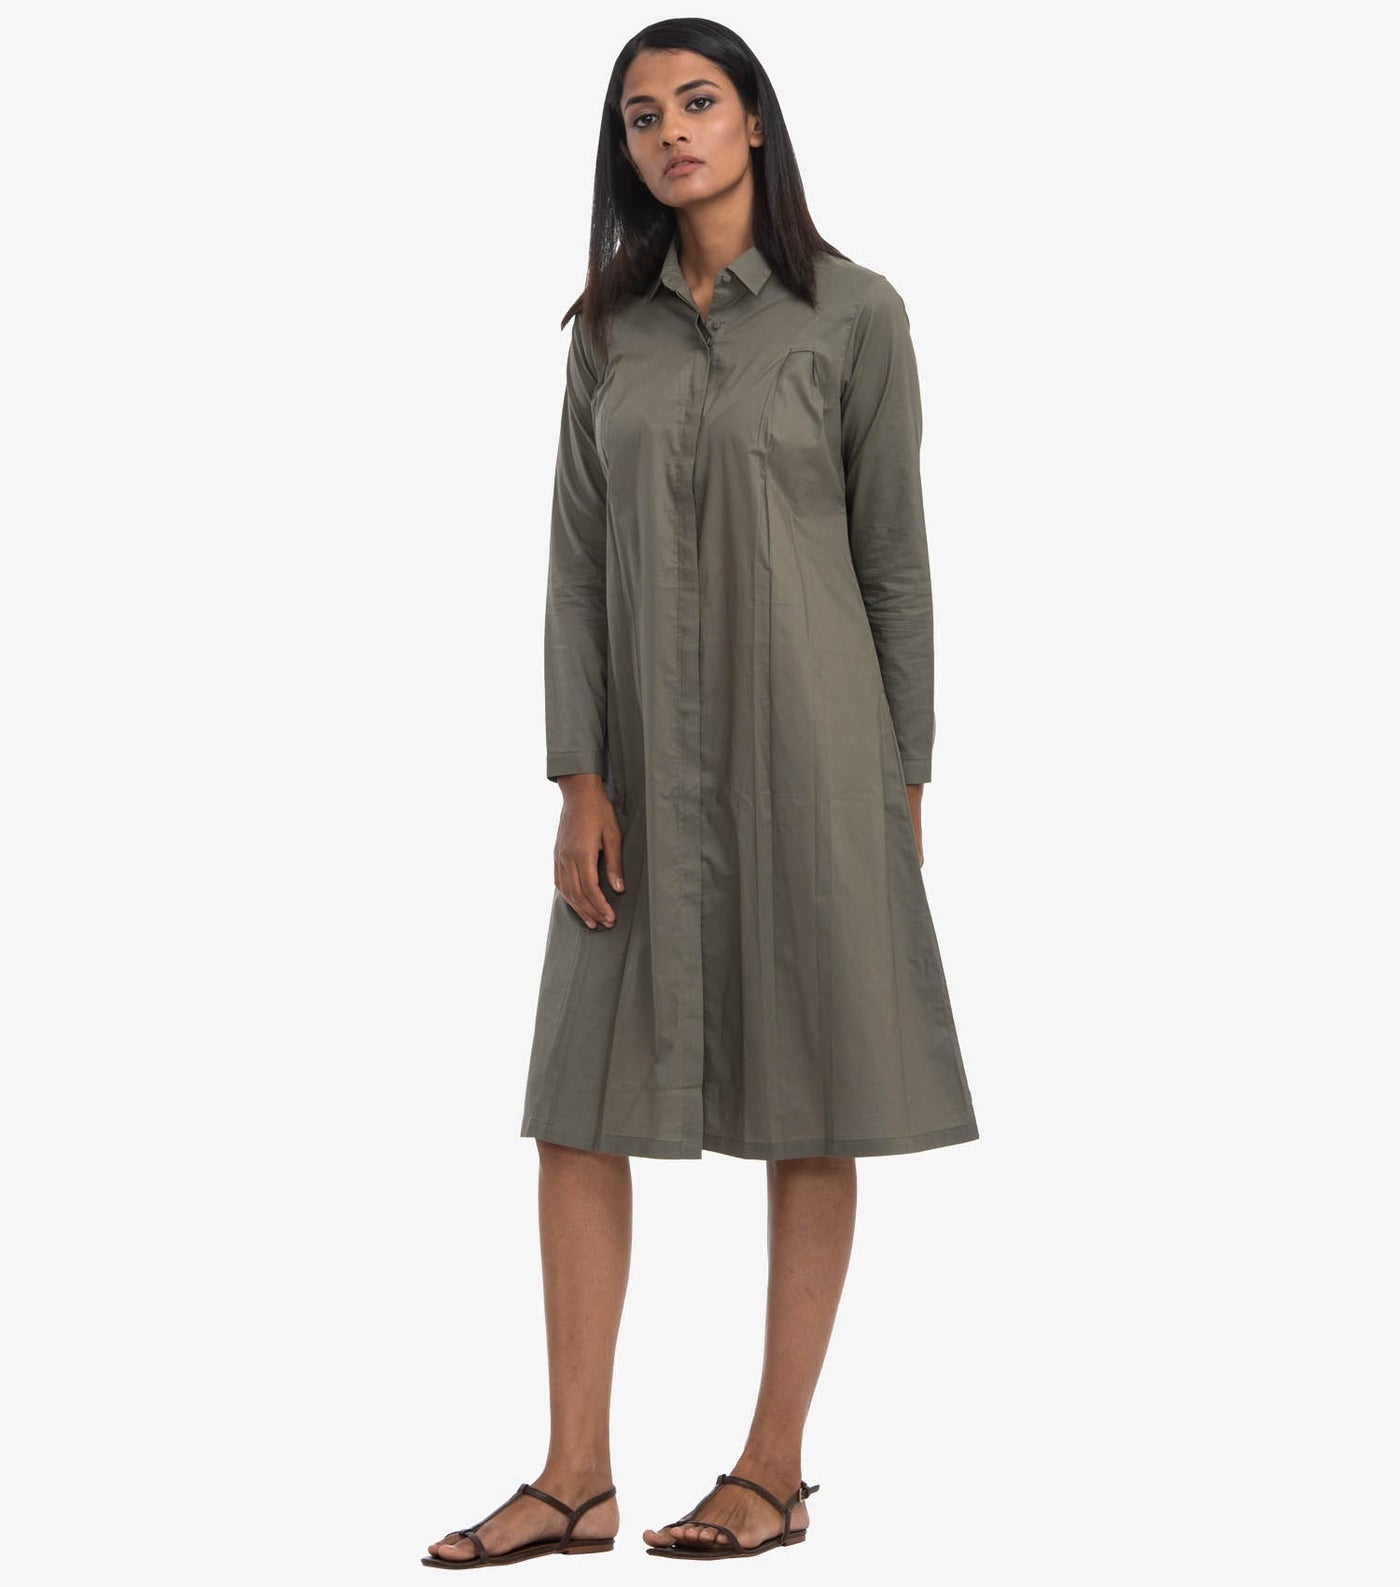 Olive poplin solid shirt dress